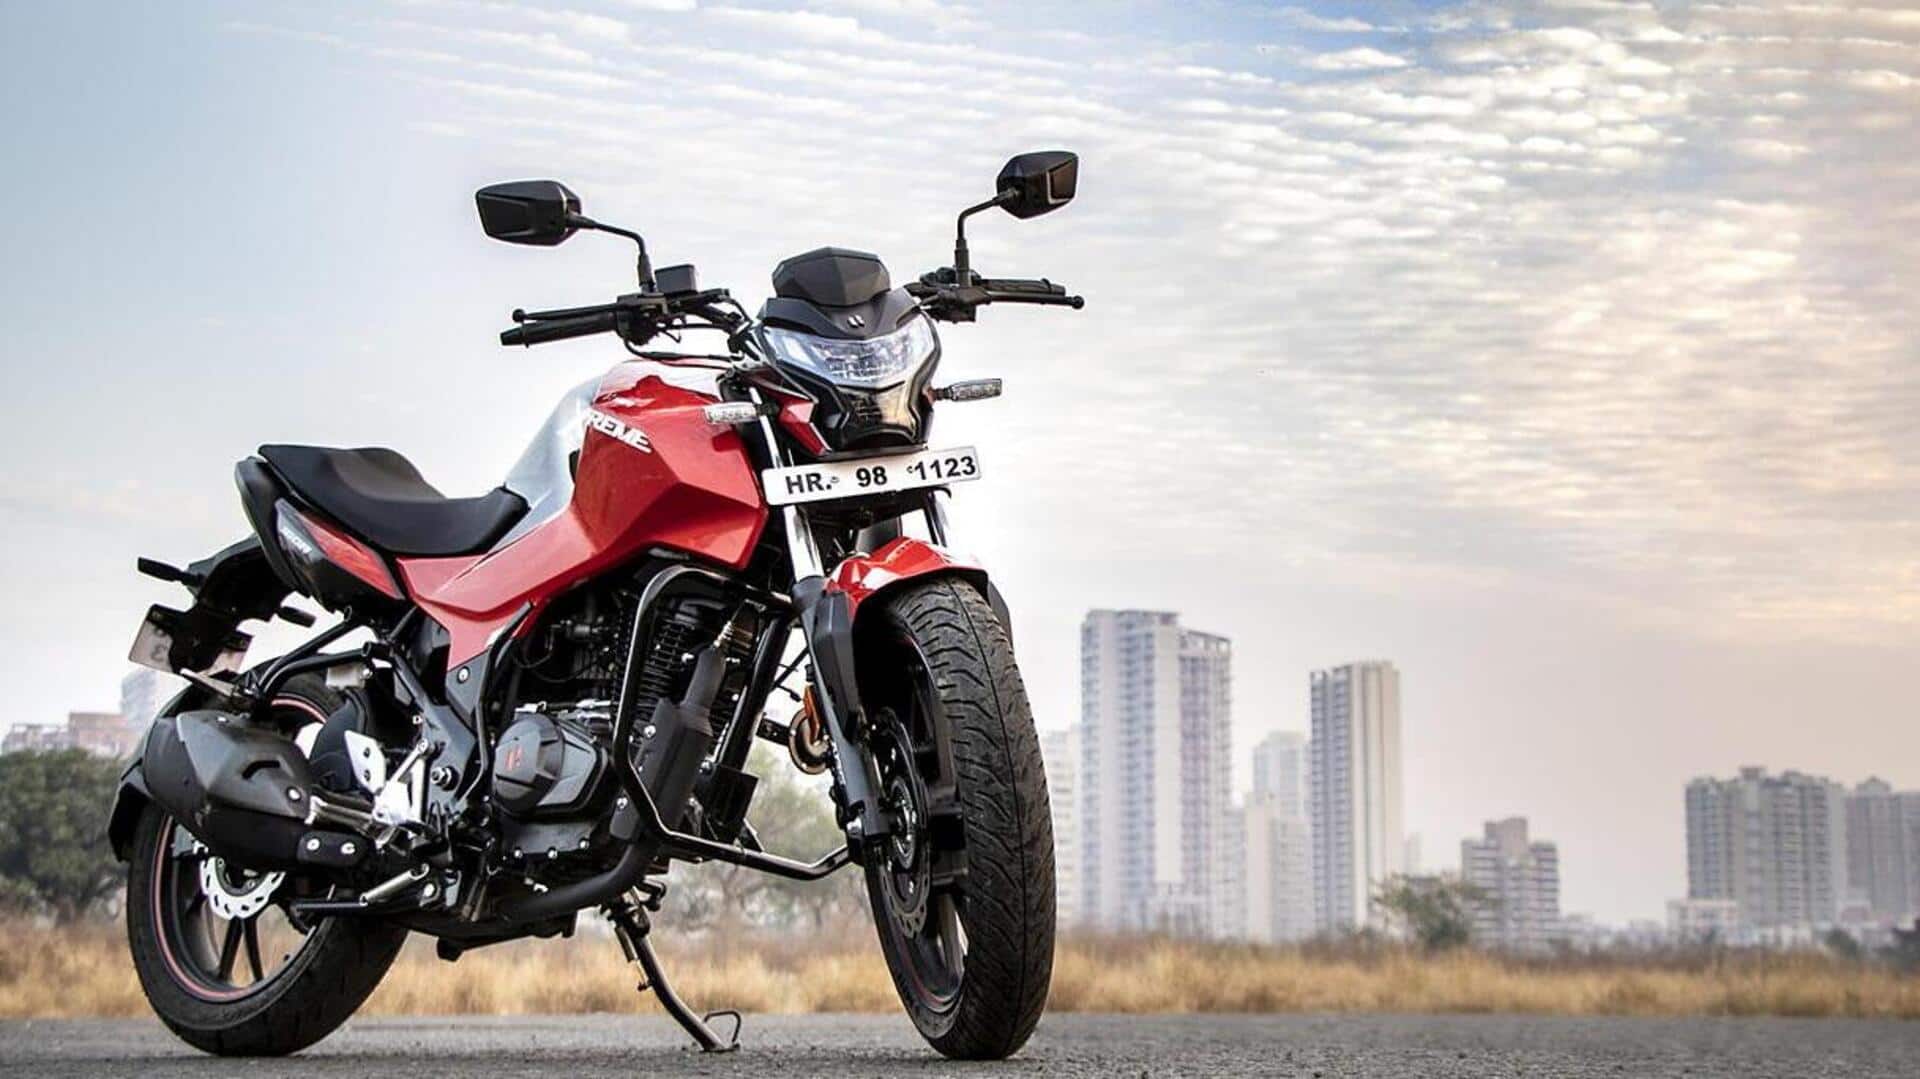 2023 हीरो एक्सट्रीम 160R बाइक हुई लॉन्च, कीमत 1.27 लाख रुपये से शुरू 